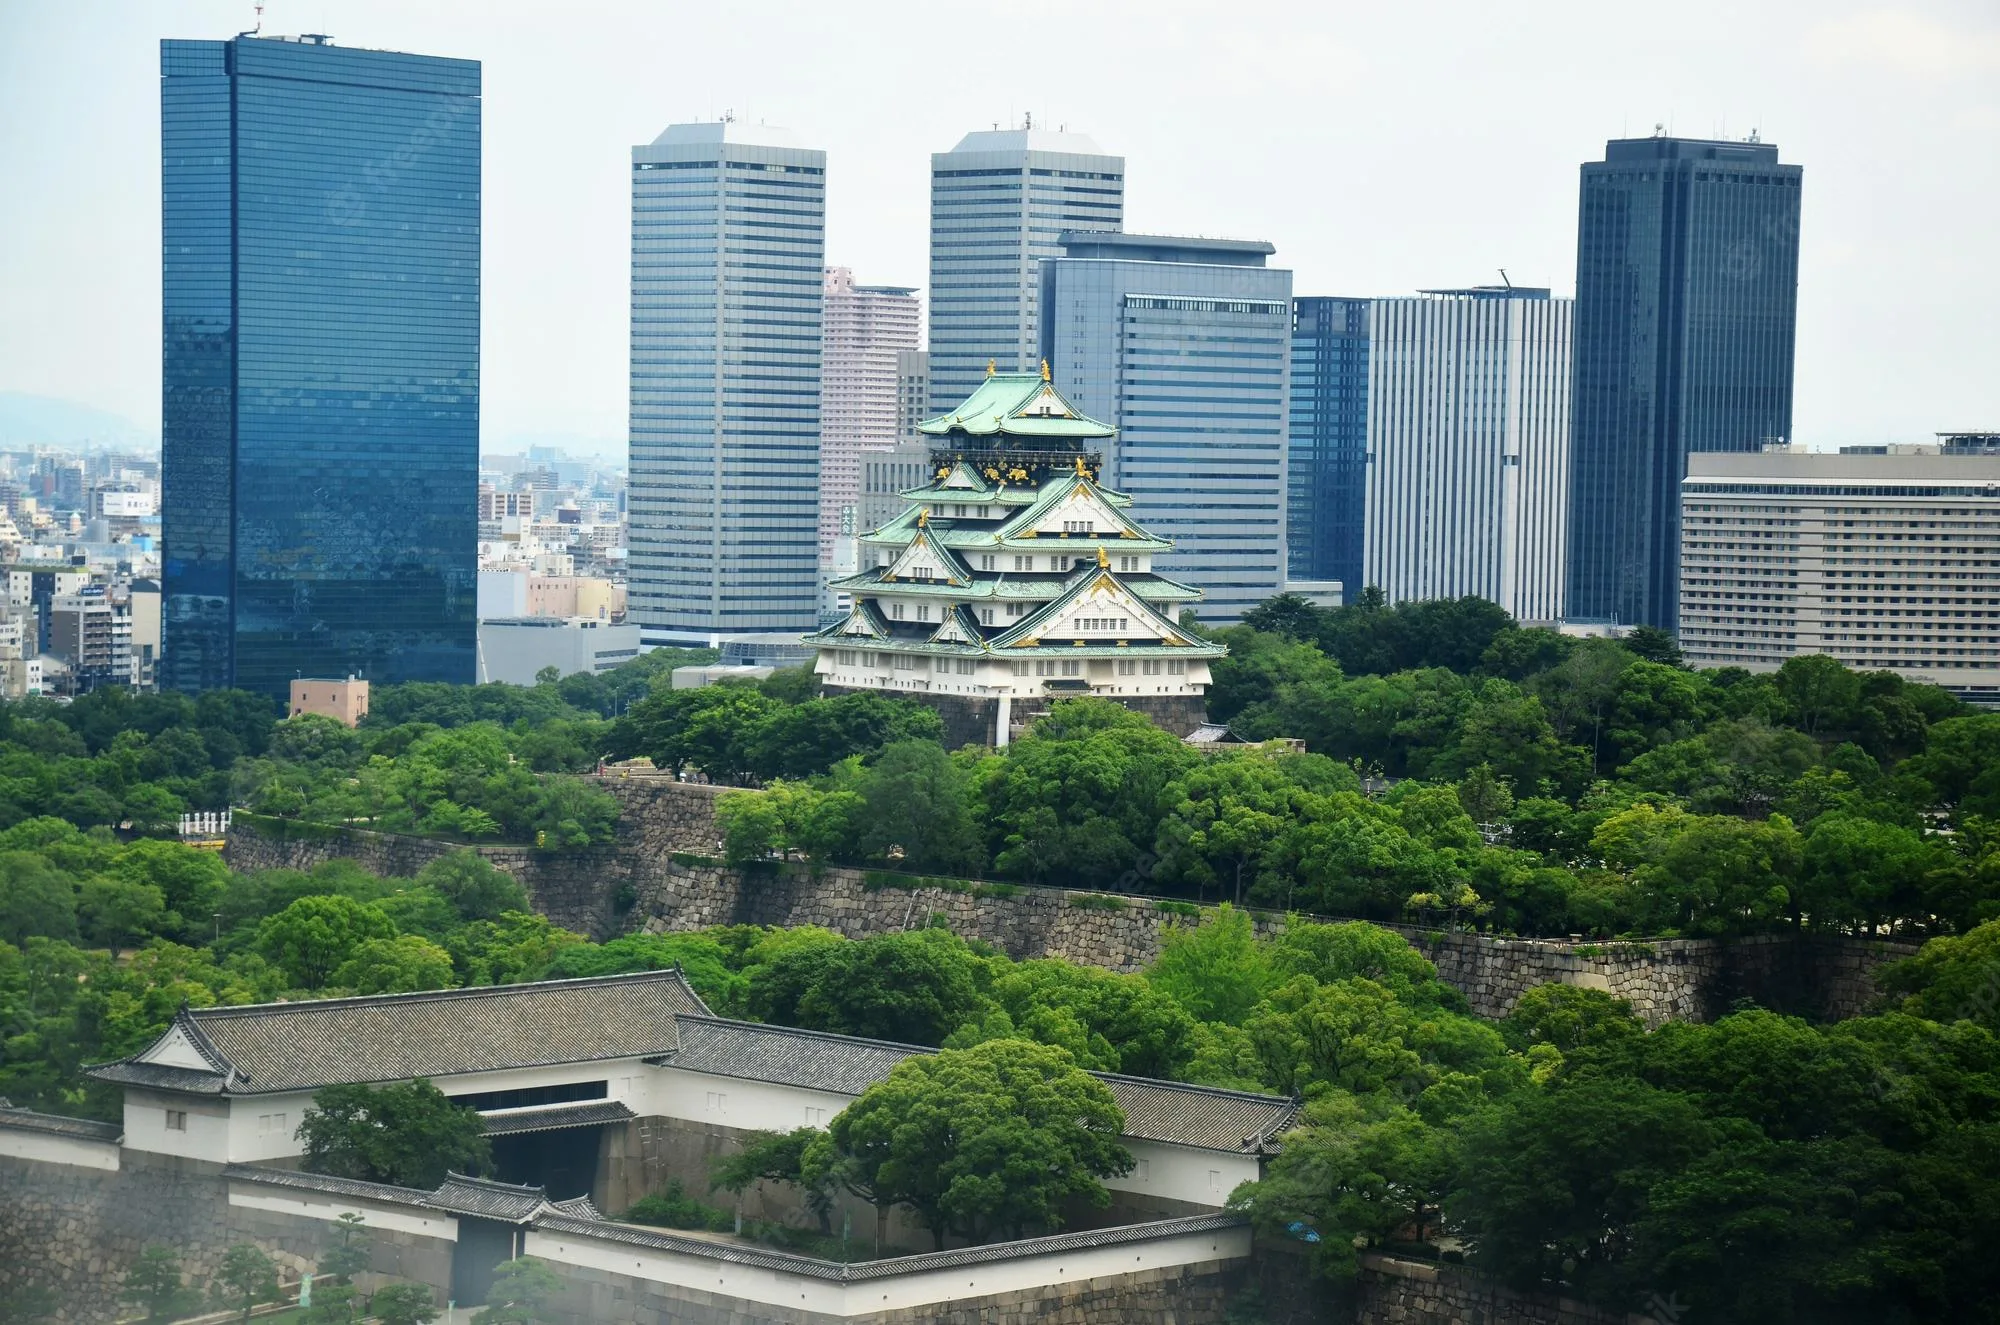 Osaka là thành phố đáng sống nhất Nhật Bản và châu Á, lý do là gì? Cùng xem góc nhìn của người nước ngoài tại đây - Ảnh 10.